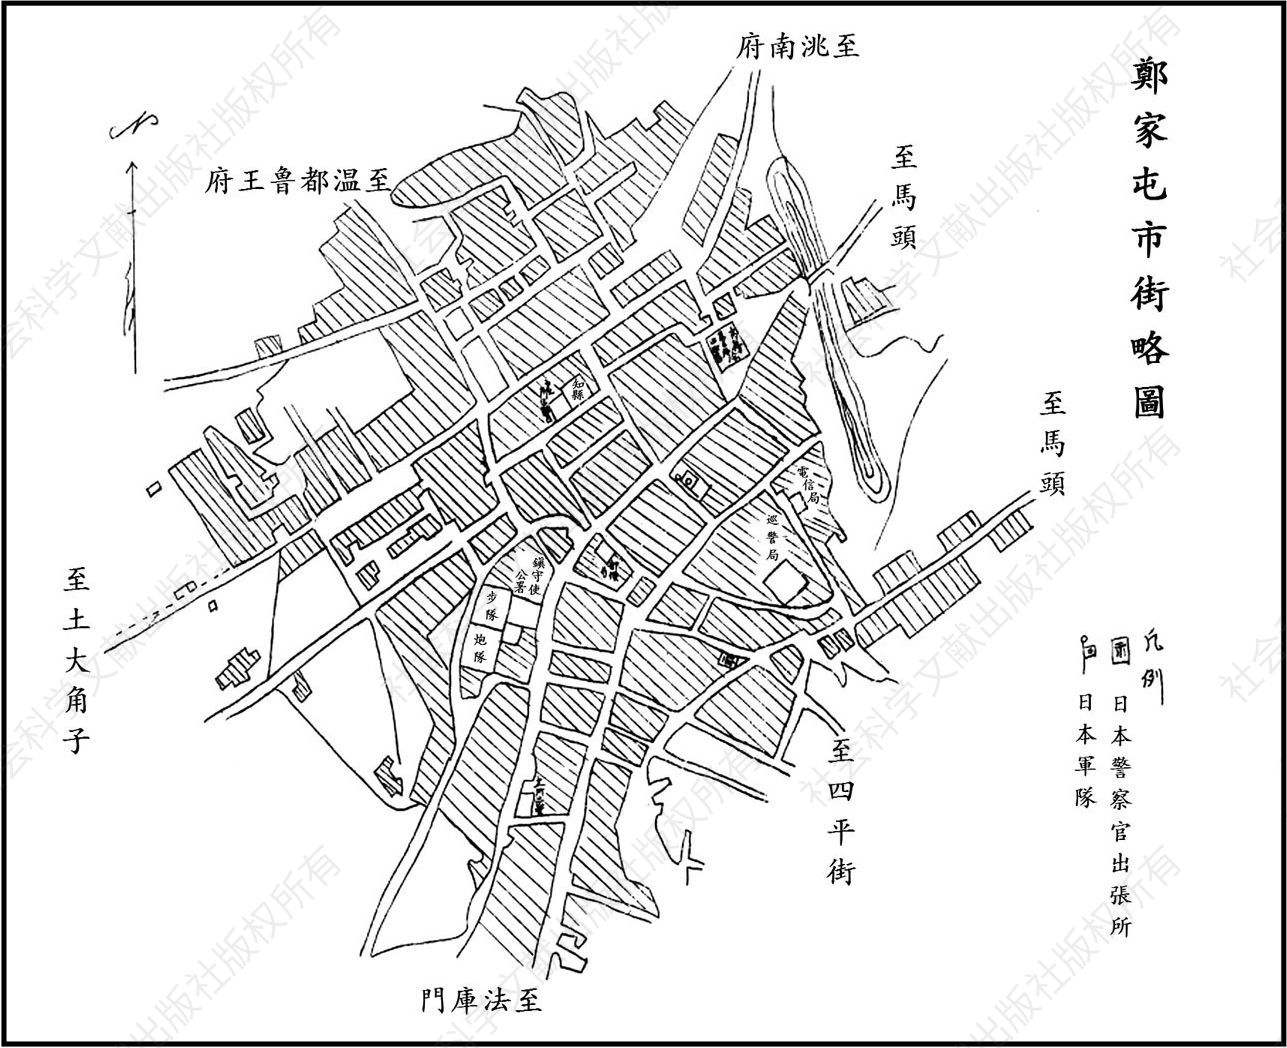 图13-1 日本档案中《郑家屯市街略图》